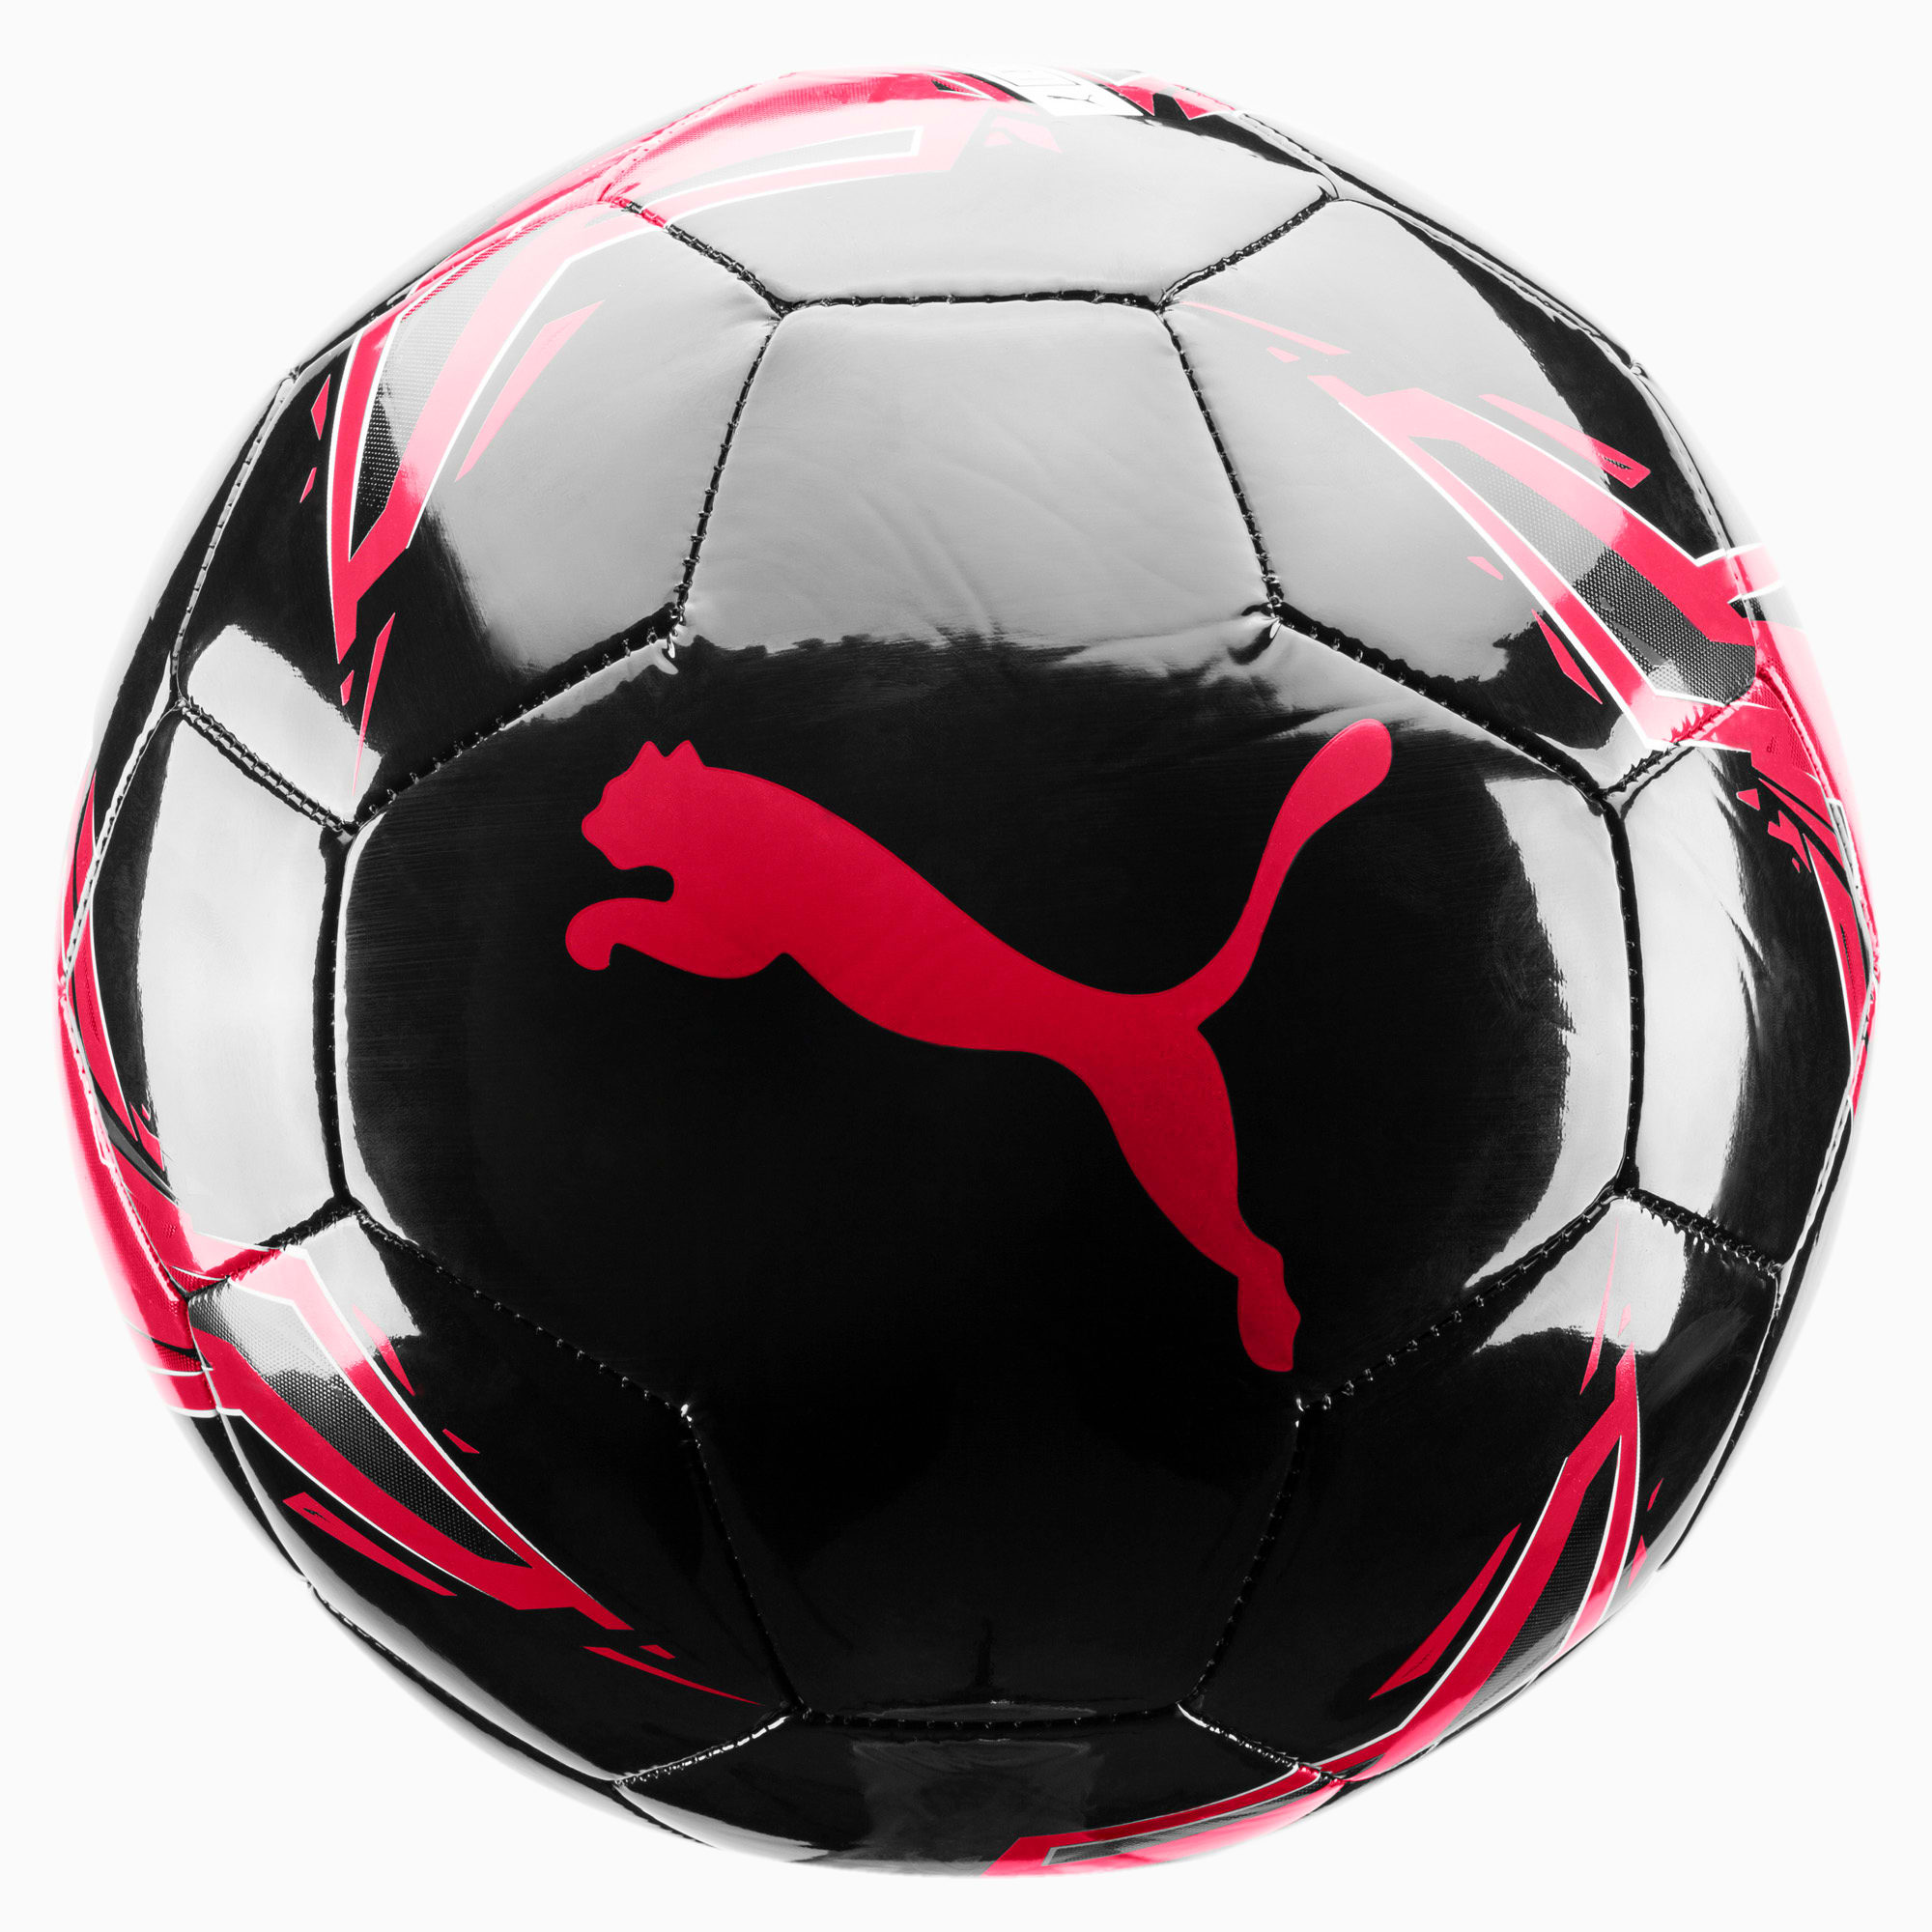 Мяч Puma 2011. Мяч Пума футбольный черный с красным. Обои мяч Пума чёрный с красным.